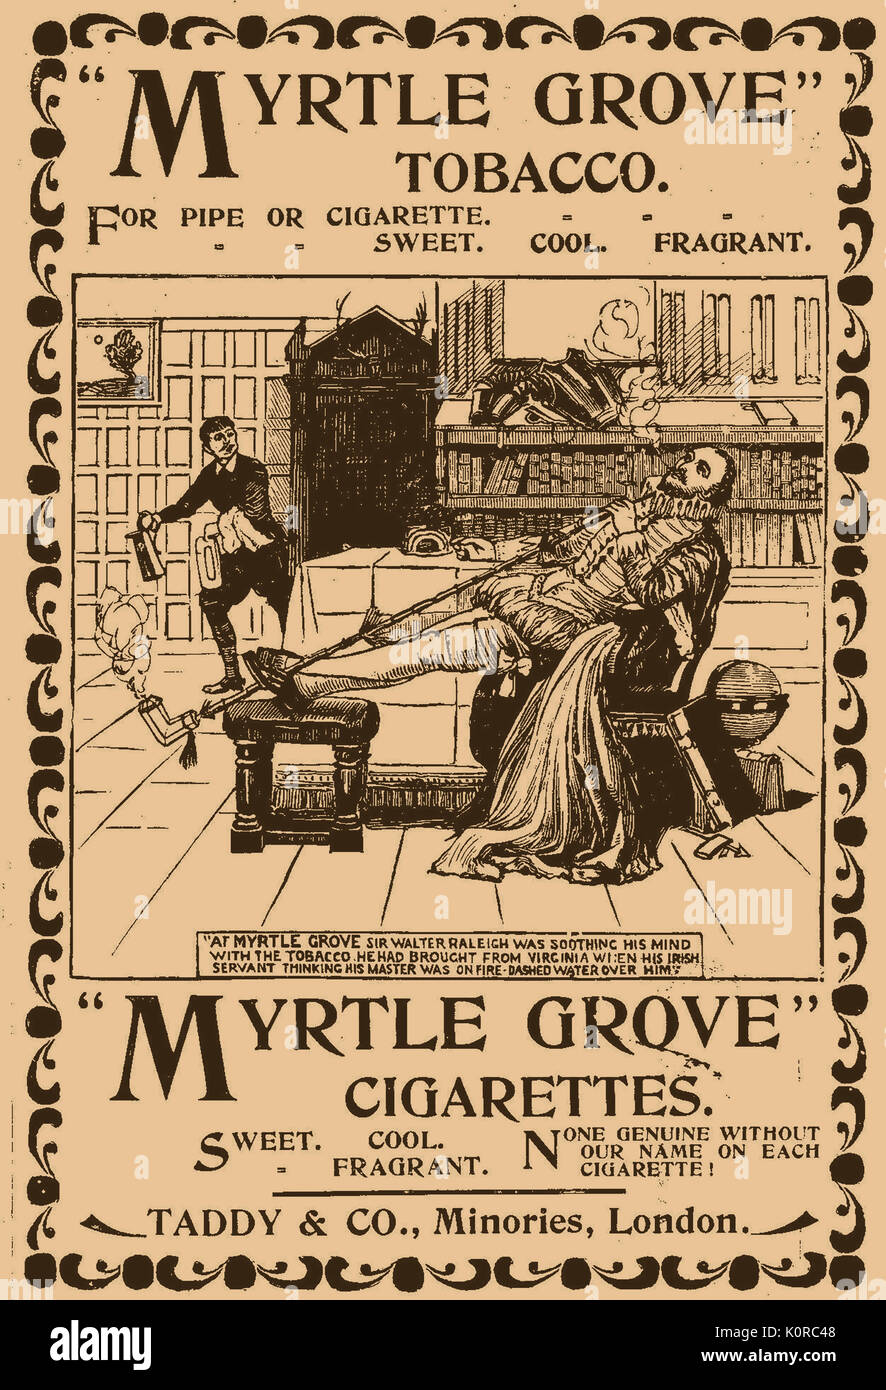 Une Demeure victorienne (1896) Publicité pour les cigarettes et tabac Myrtle Grove, avec Sir Walter Raleigh fumeurs un très long tuyau et serviteur apportant l'eau pour éteindre le feu Banque D'Images